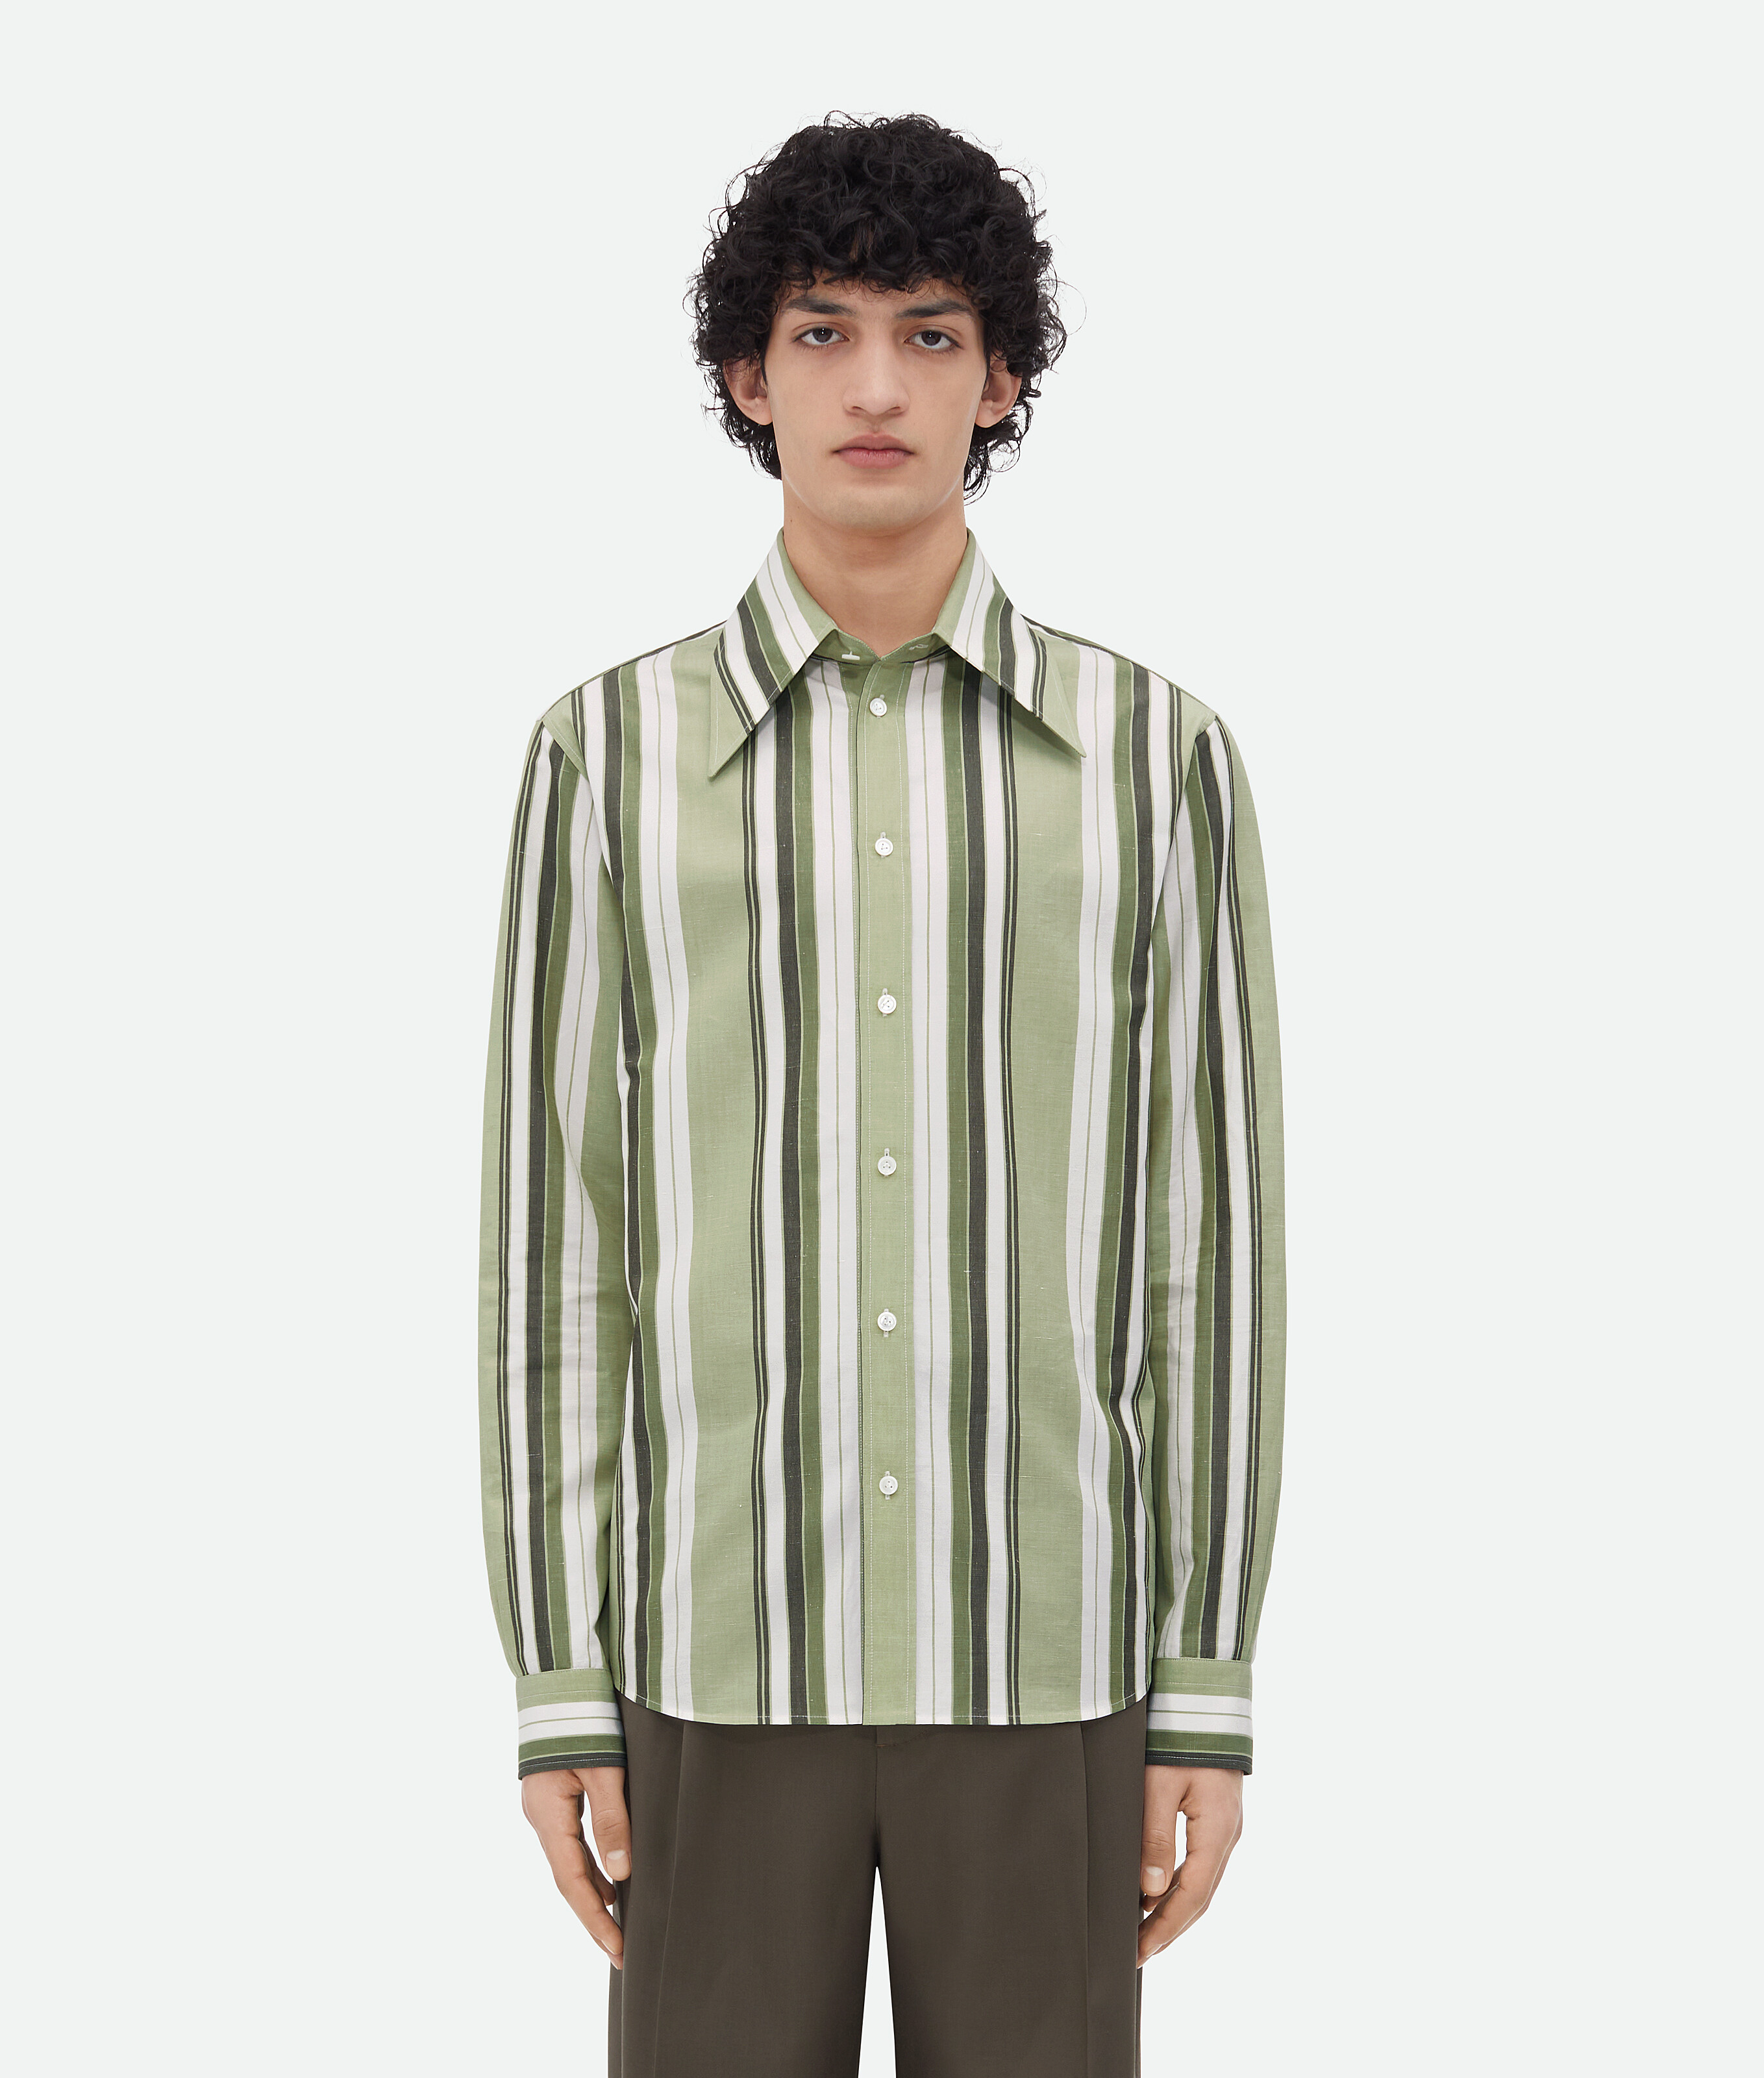 Bottega Veneta Striped Cotton Shirt In Pale Green/white